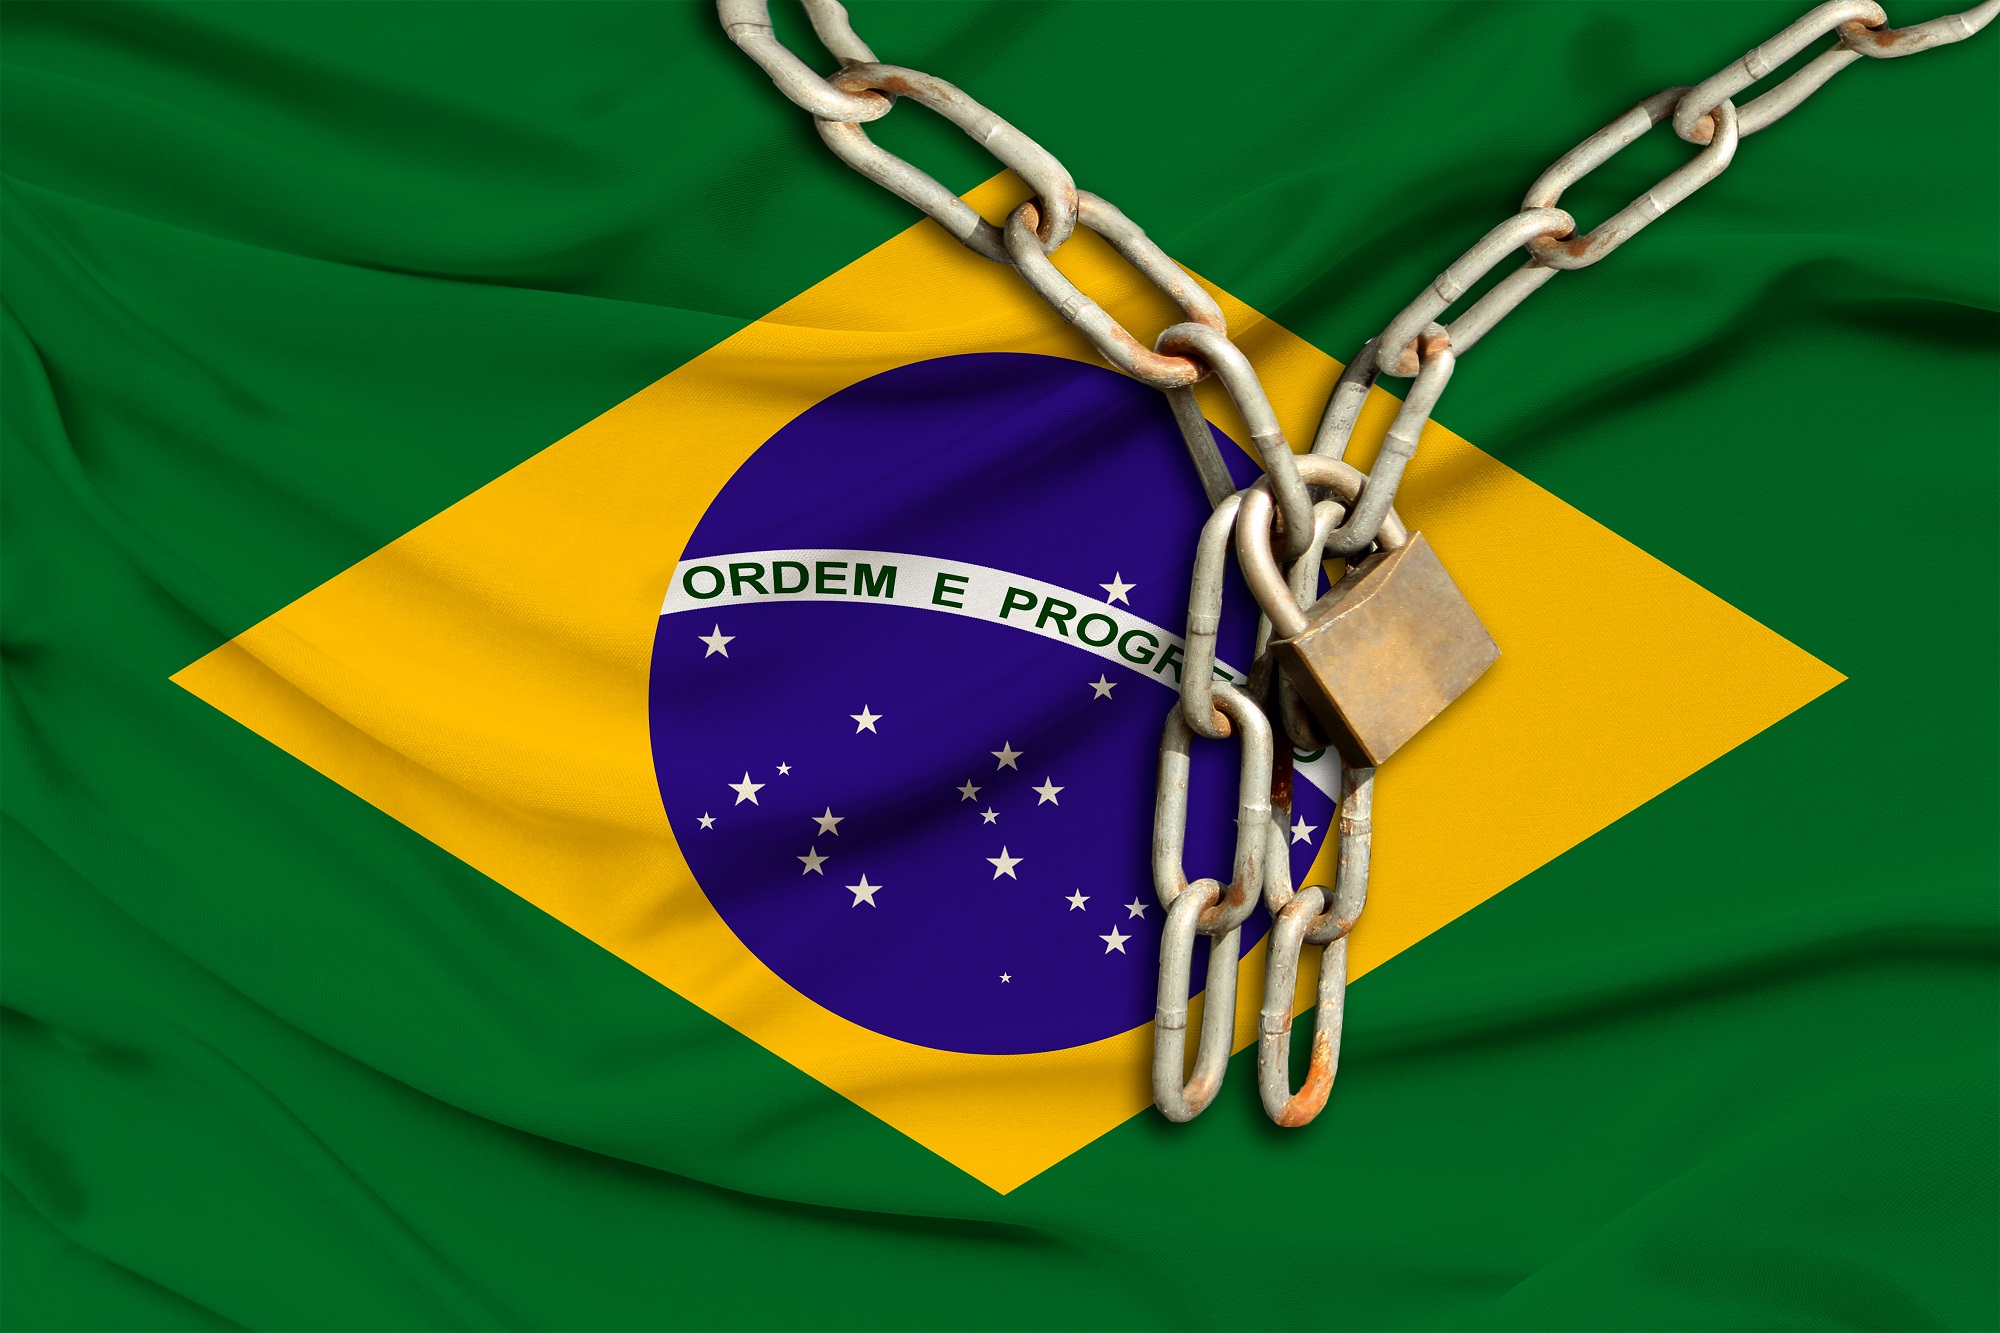 Brezilya bayrağının üzerinde metal bir zincir ve asma kilit var.